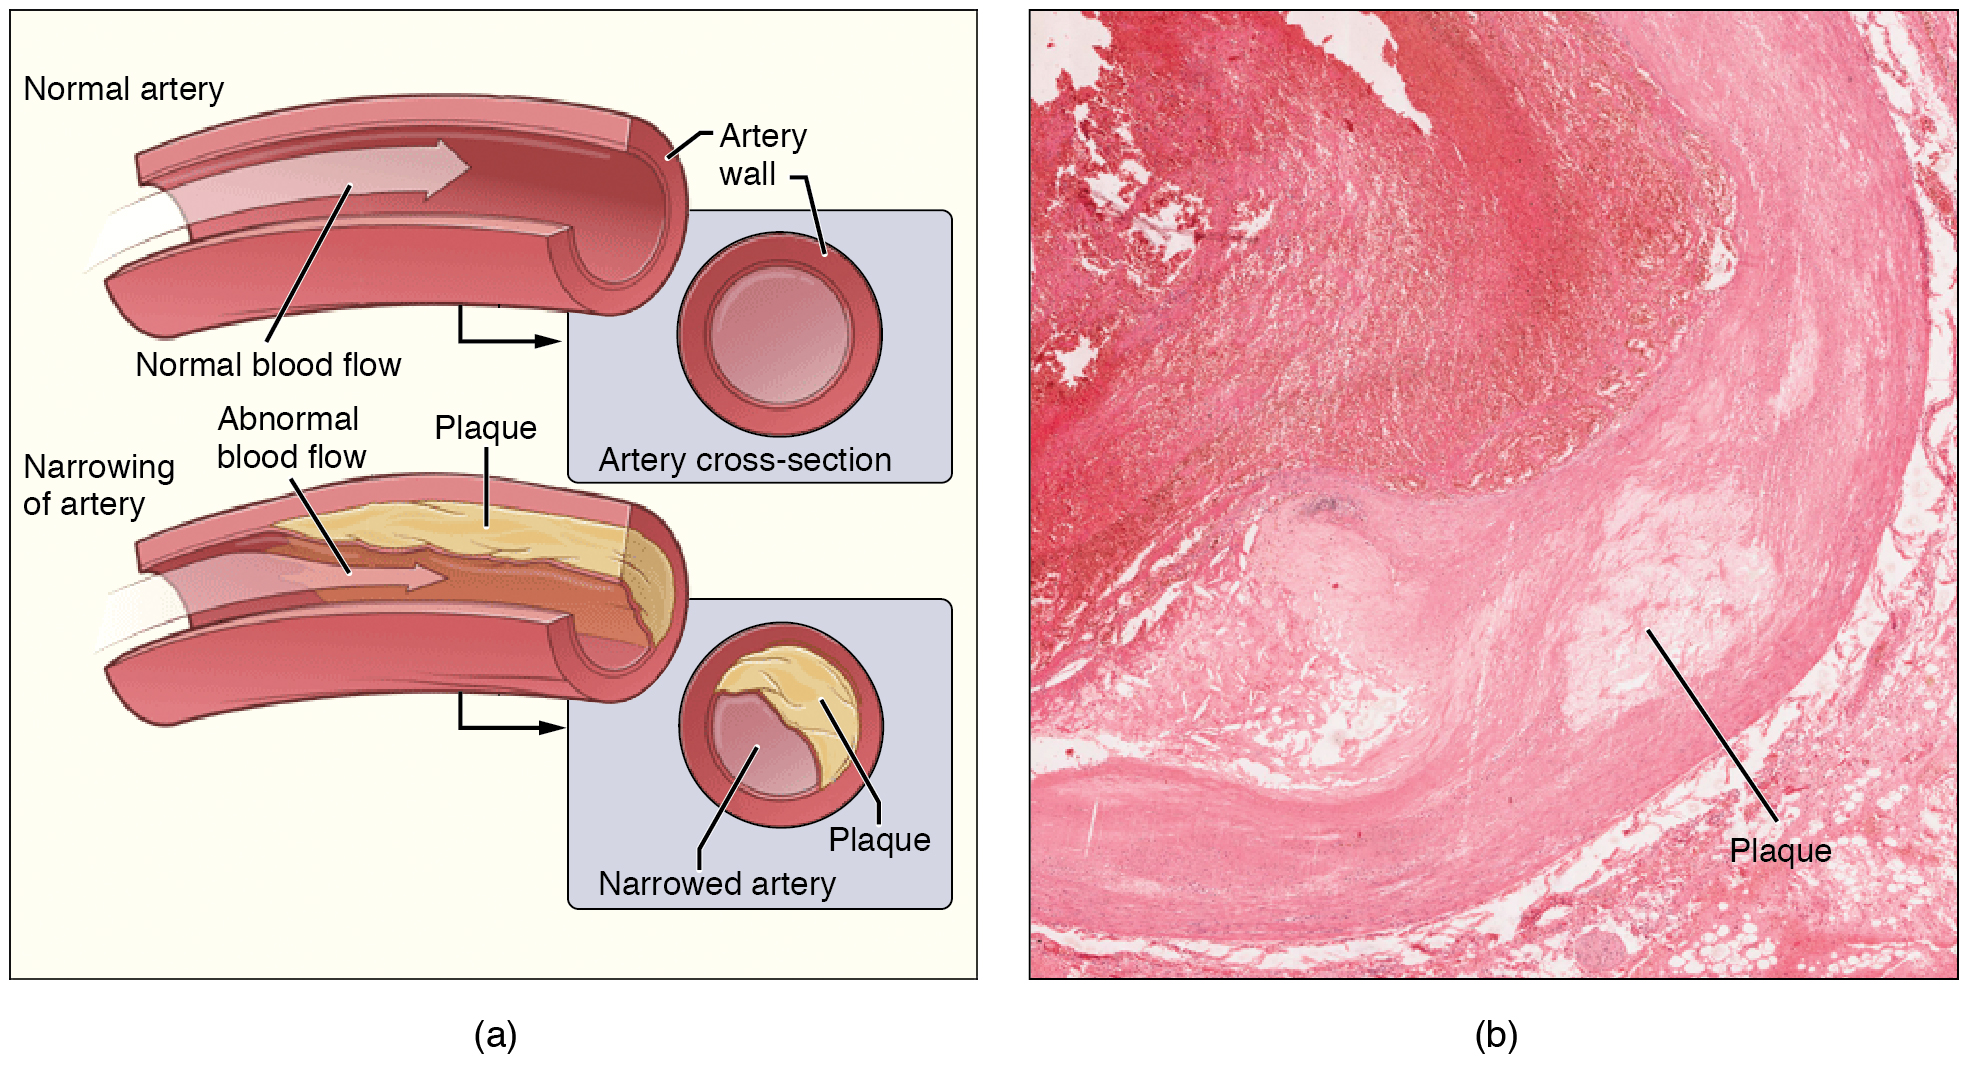 Arterias normales y estrechadas. Descripción de la imagen disponible.